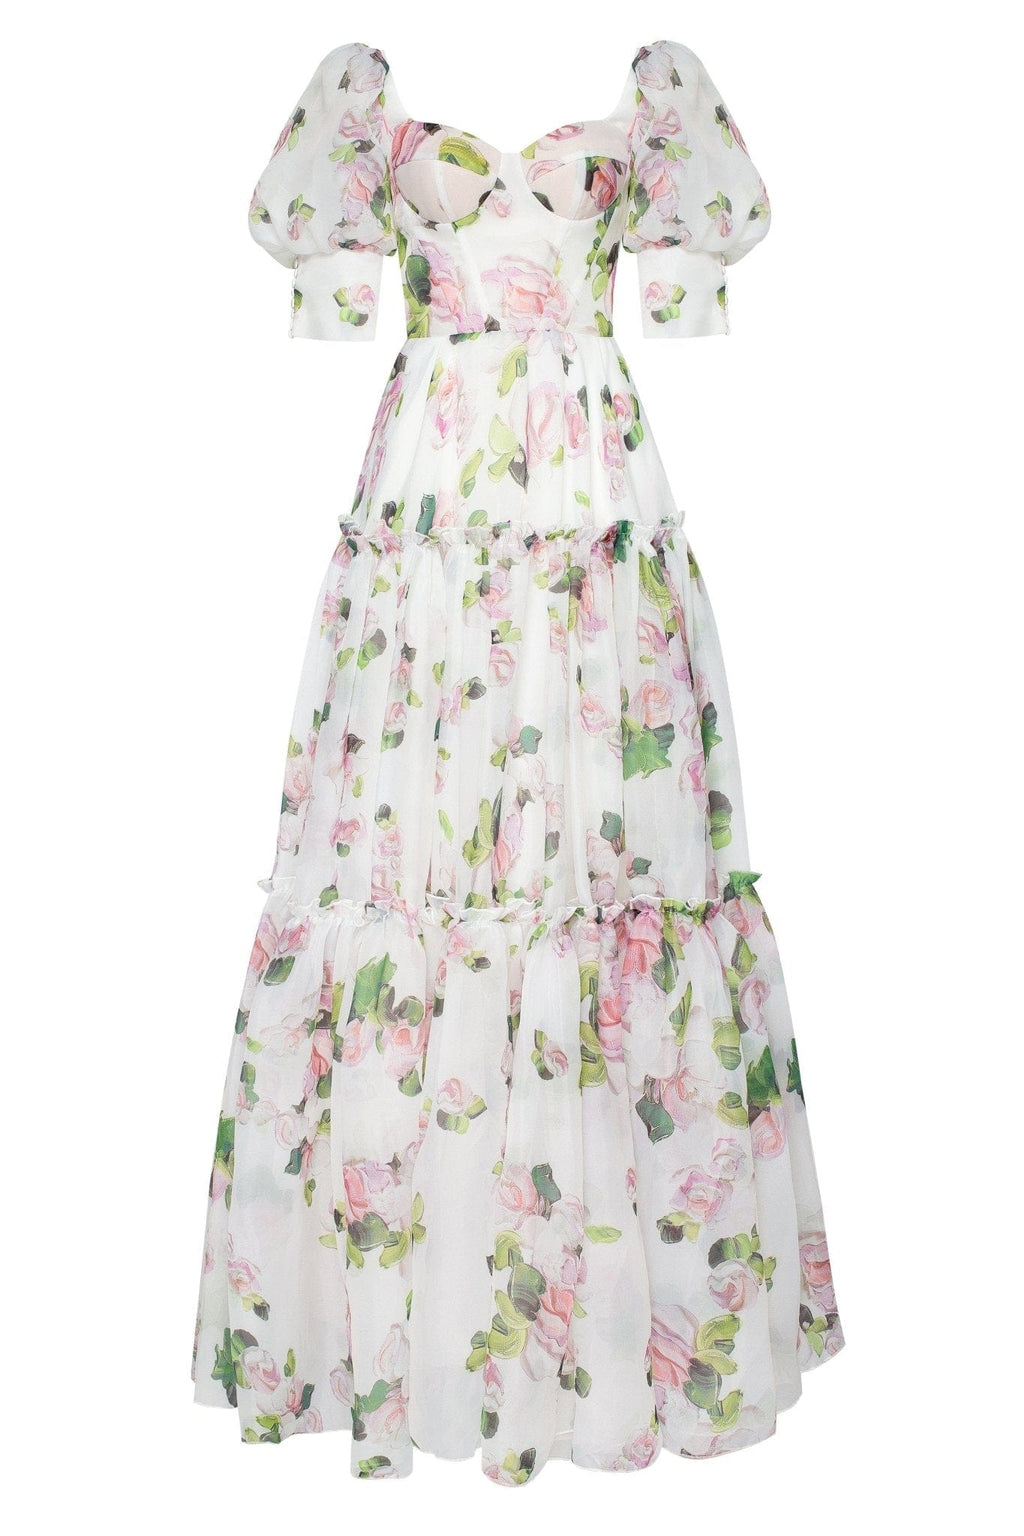 Apple Blossom Feminine voluminous sheer sleeves dress - Milla